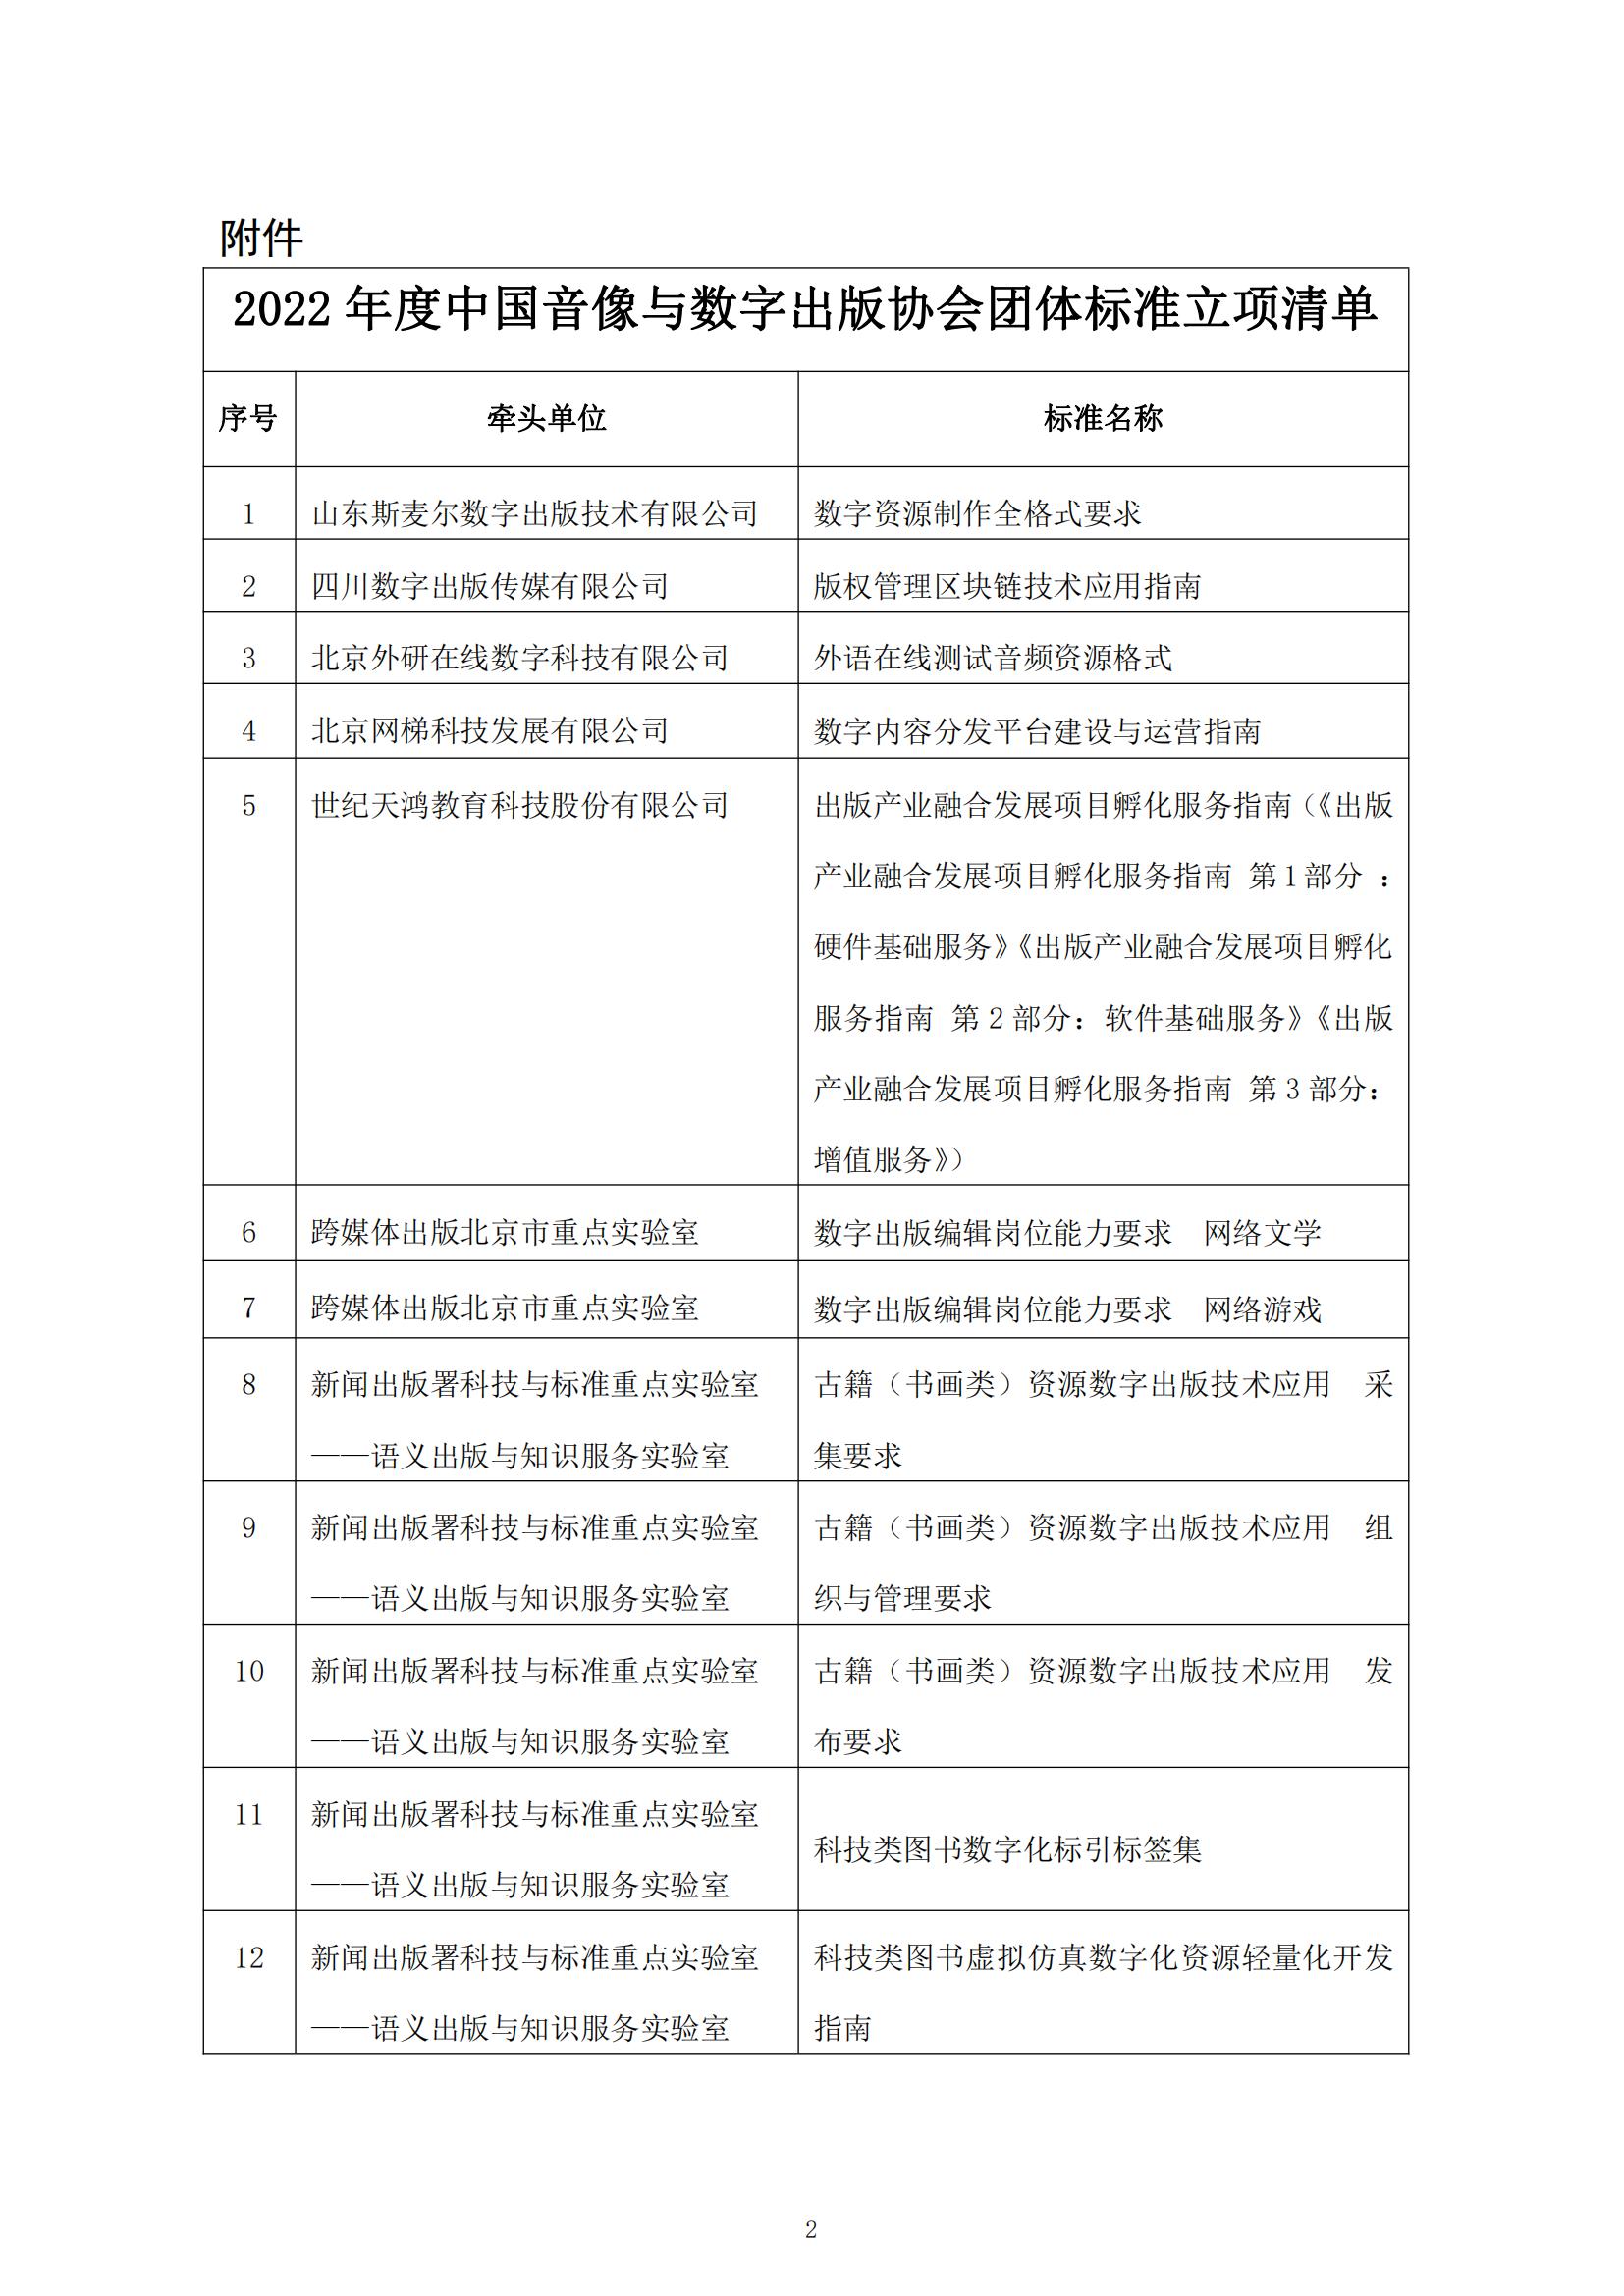 關于2022年度中國音像與數字出版協會團體標準立項的通知_01.jpg